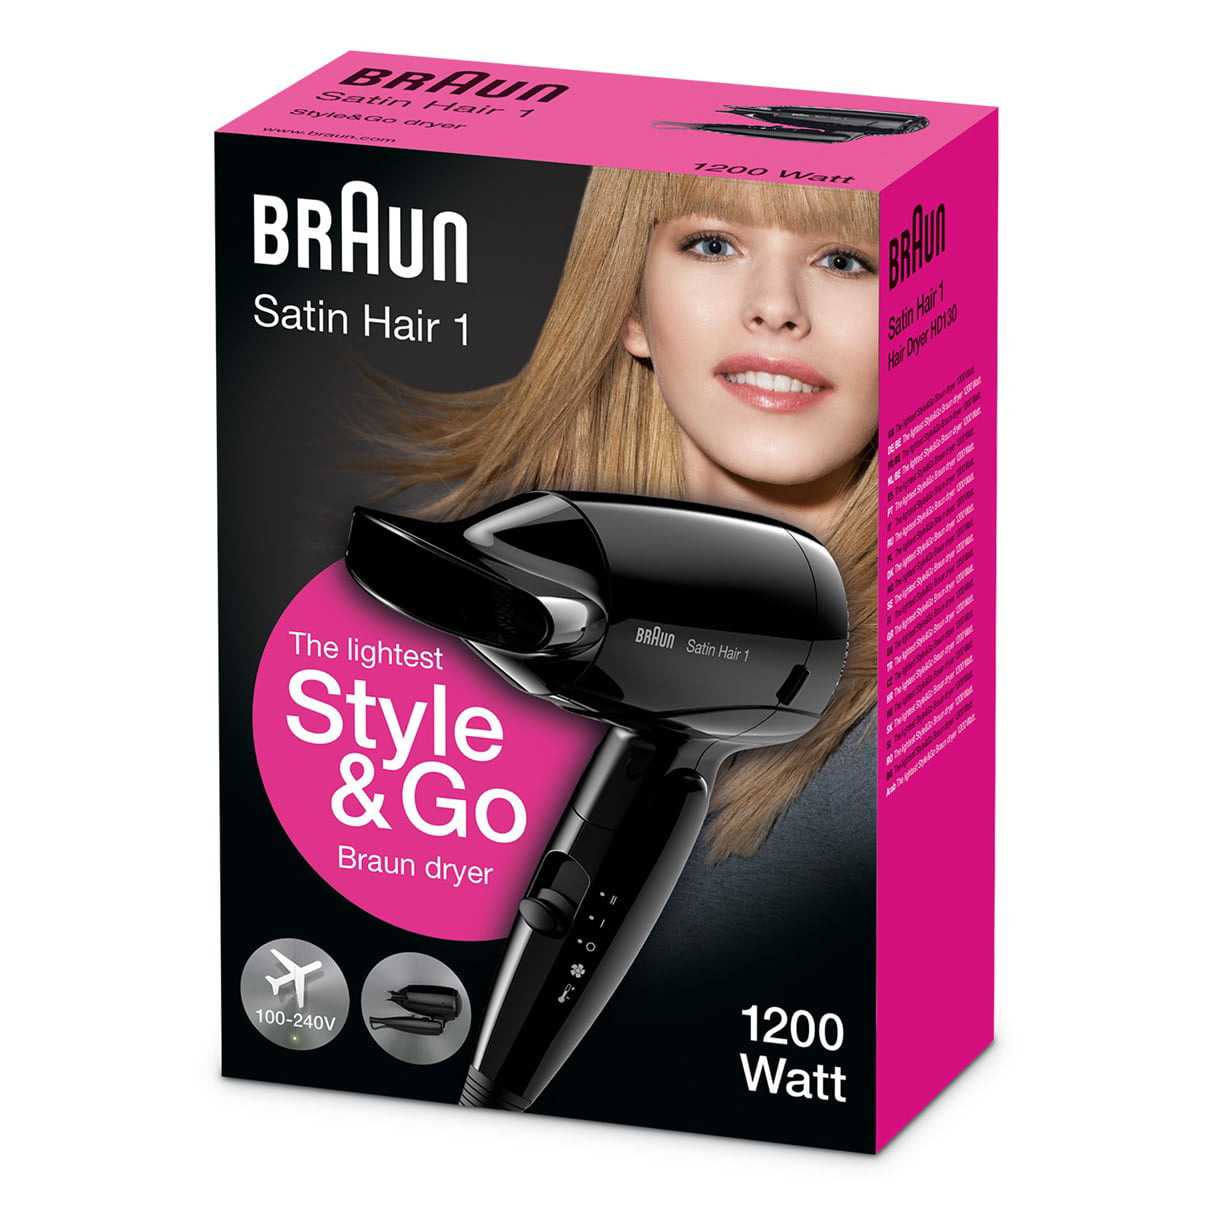 Braun Travel Hair Dryer Dual Voltage 110-220 Volt for WORLDWIDE USE -  